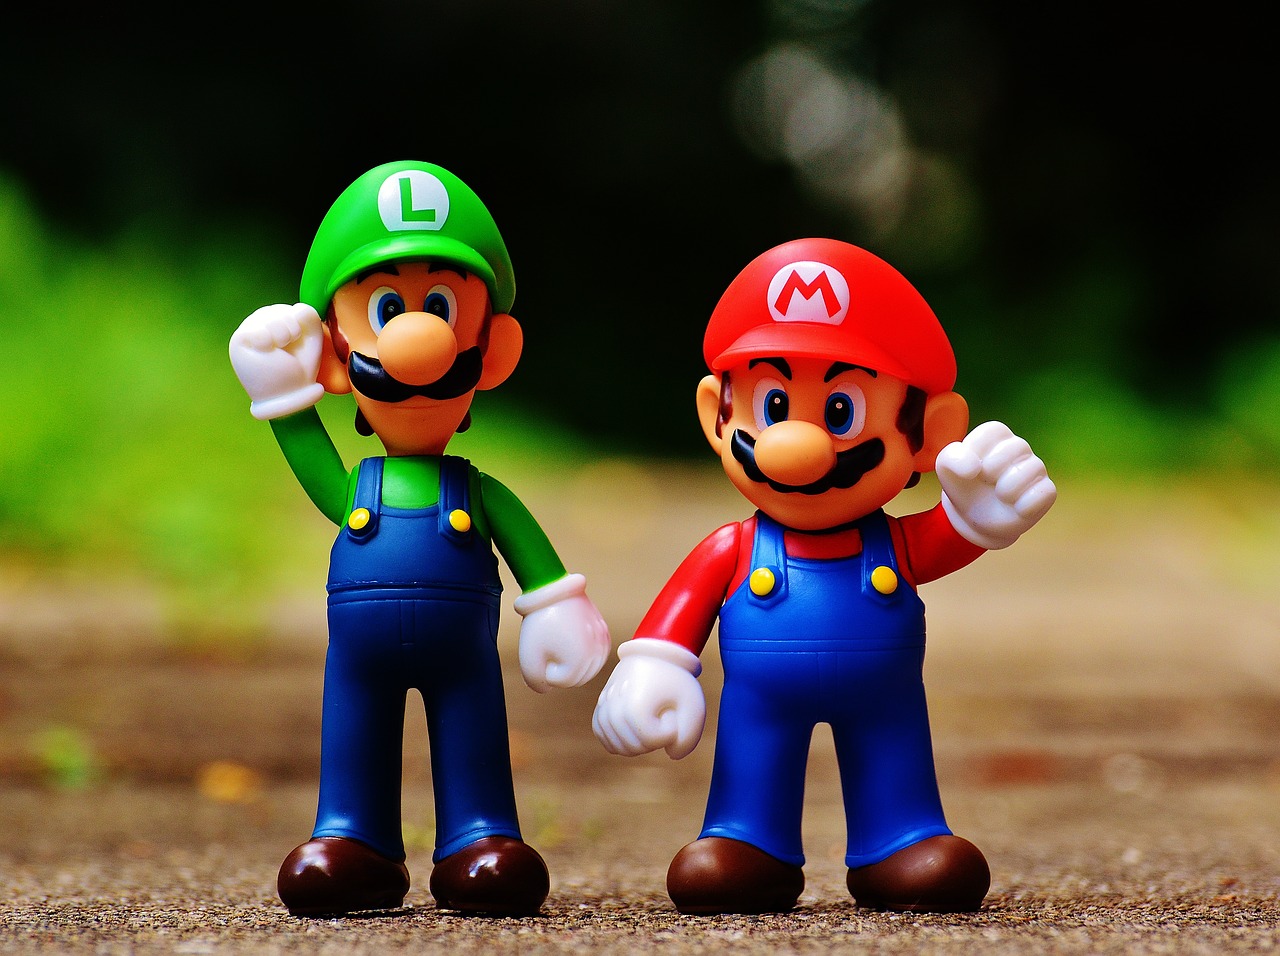 Mario und Luigi|Twitter Post Super Smash Bros. Turnier|Hamburger und Pommes Frites